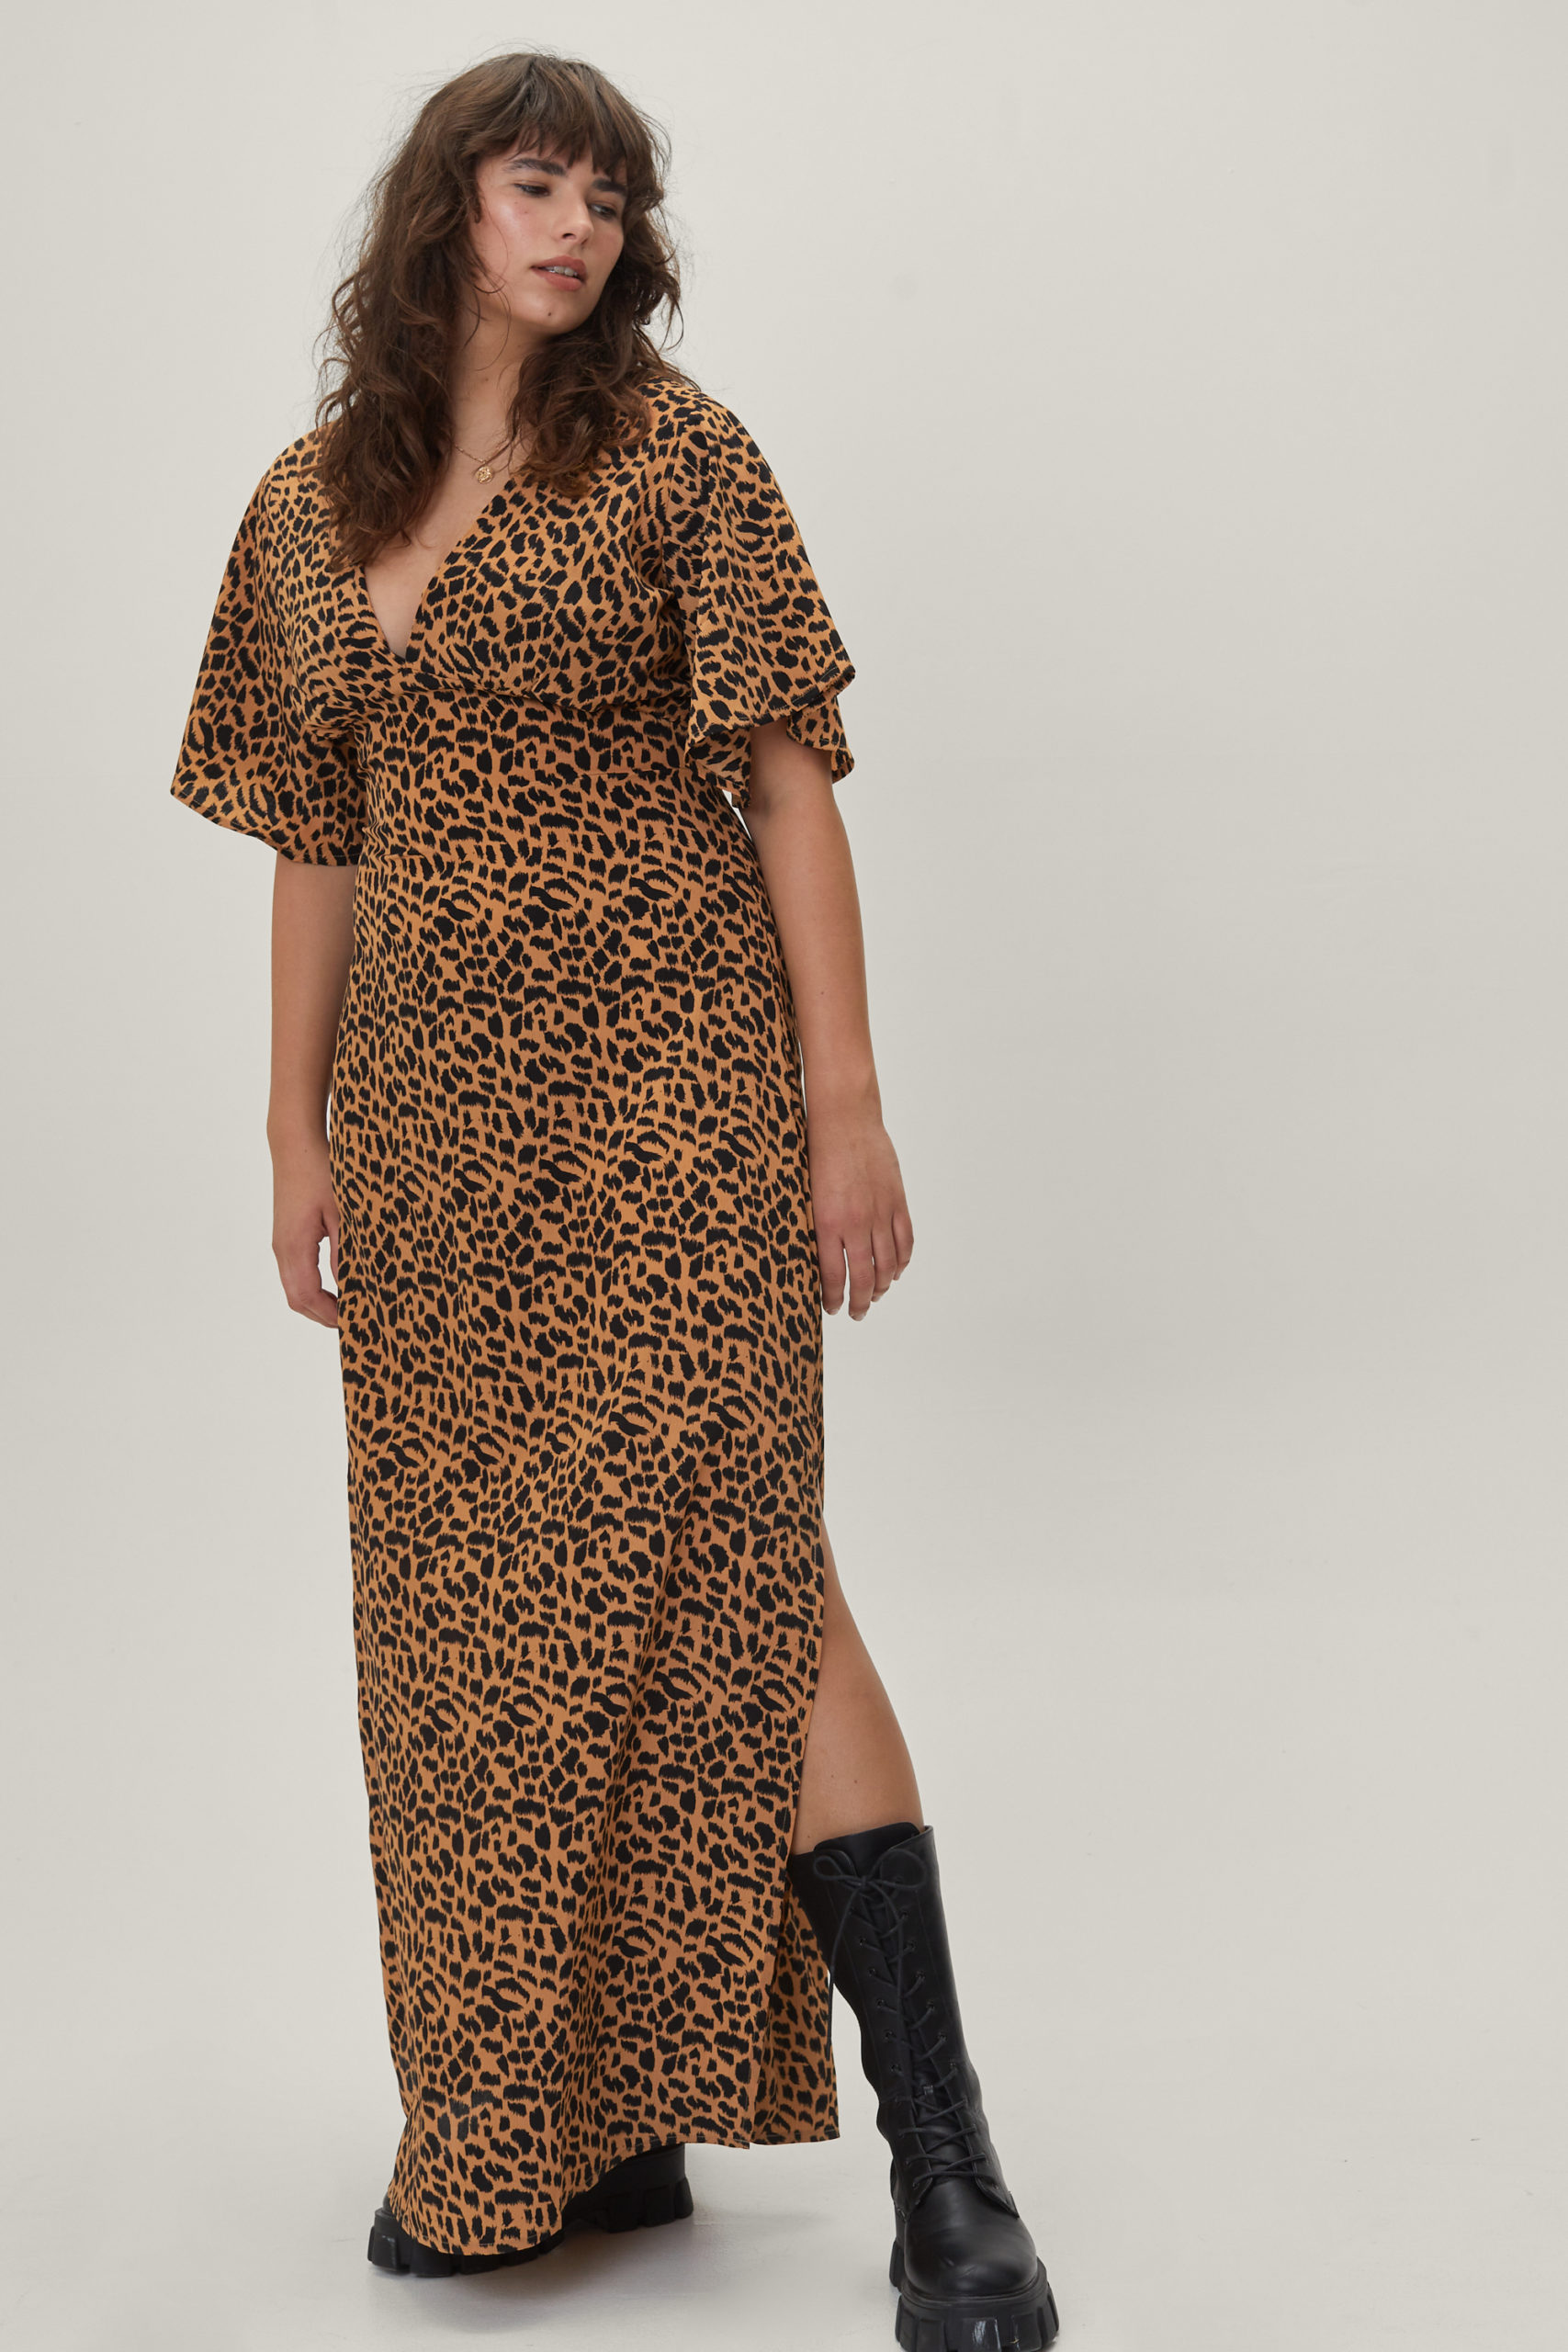 Plus Size Leopard Maxi Dress